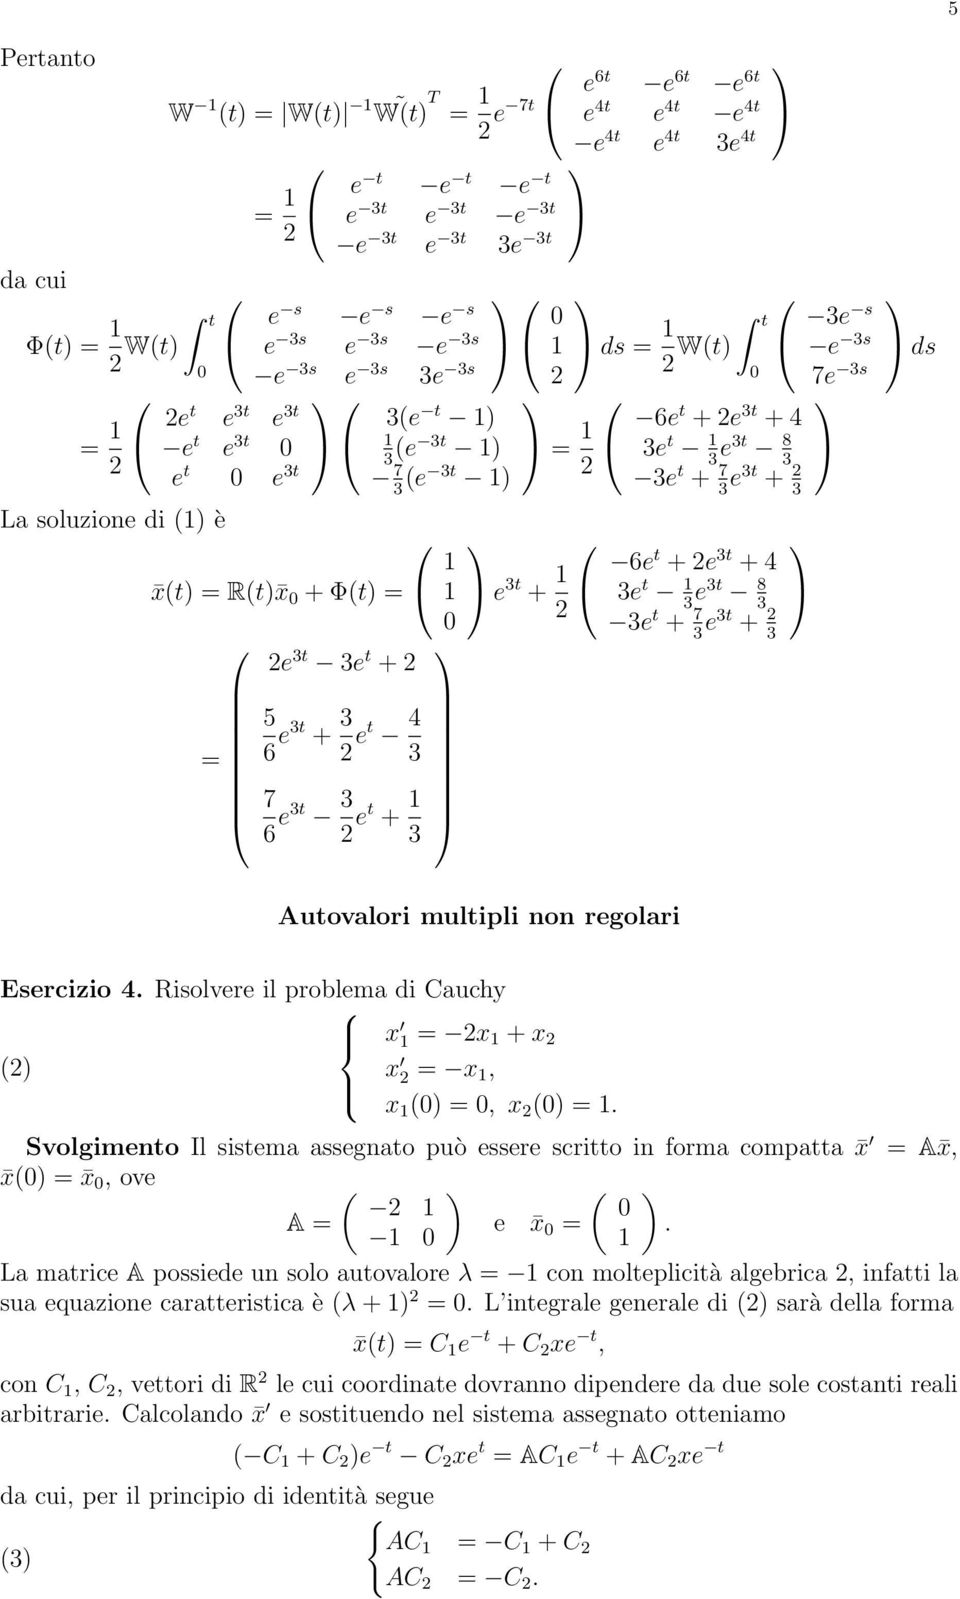 3 e3t 8 3 3e t + 7 3 e3t + 3 3e s e 3s 7e 3s ds Autovalori multipli non regolari Esercizio 4. Risolvere il problema di Cauchy = + =, =, =.